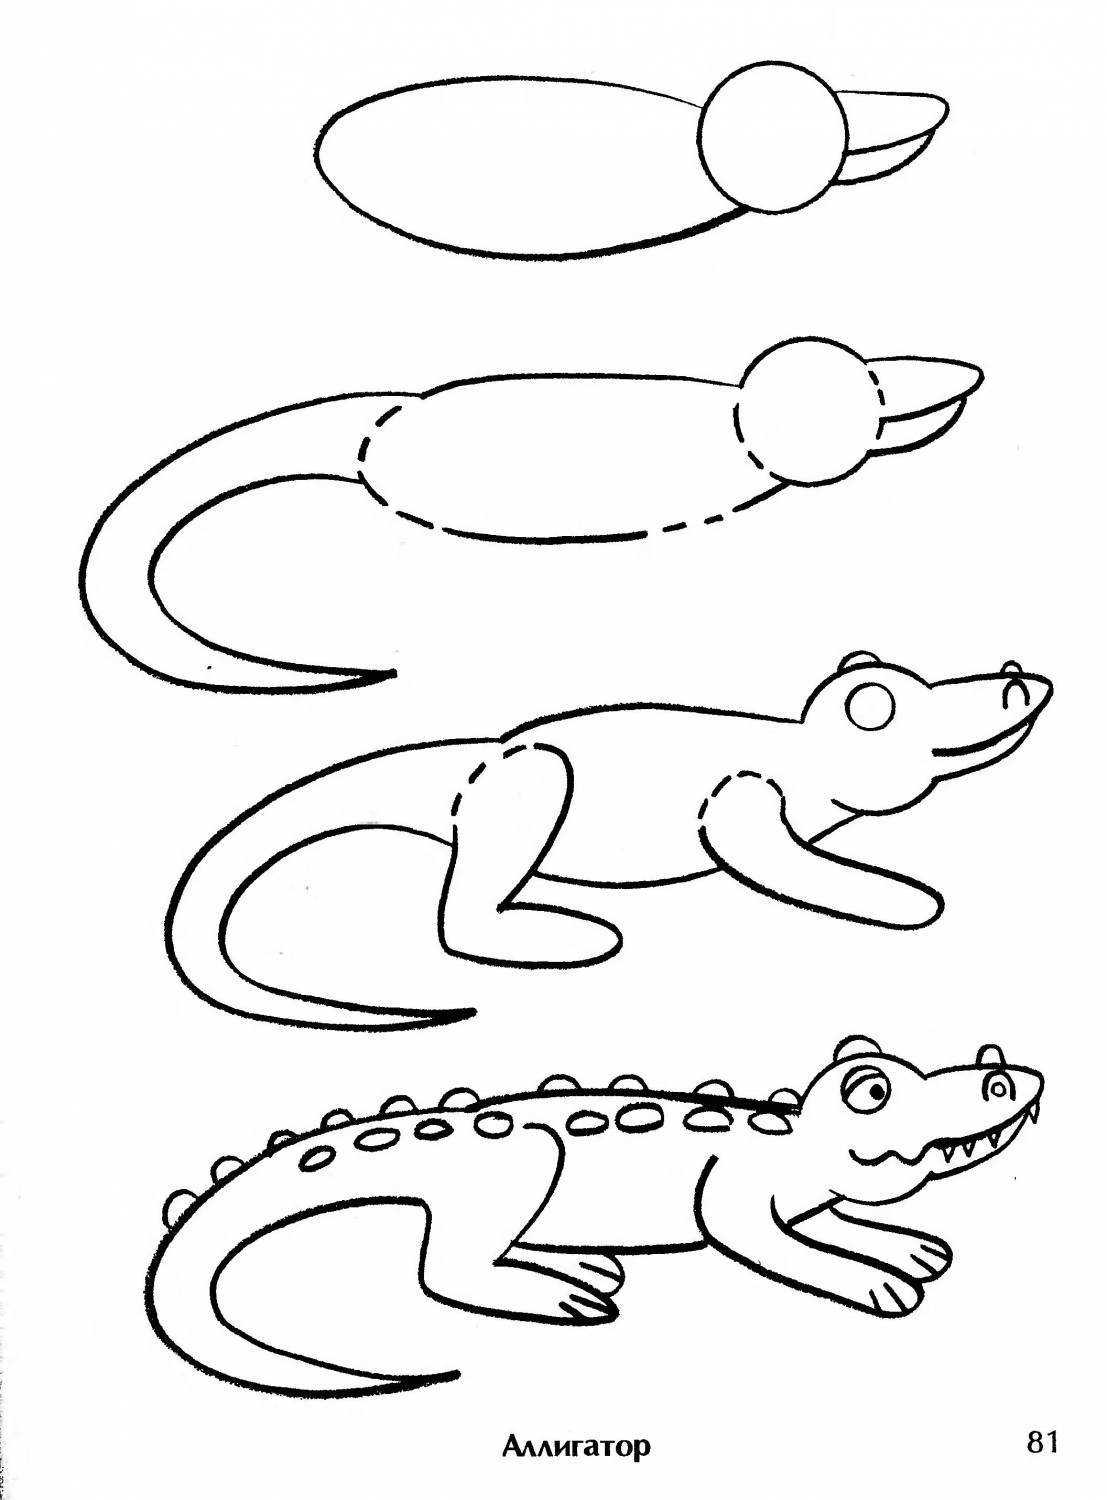 Смотрите ТОП лучших вариантов как легко и просто нарисовать крокодила карандашом для начинающих Скачивайте и распечатывайте с лучшим порталом